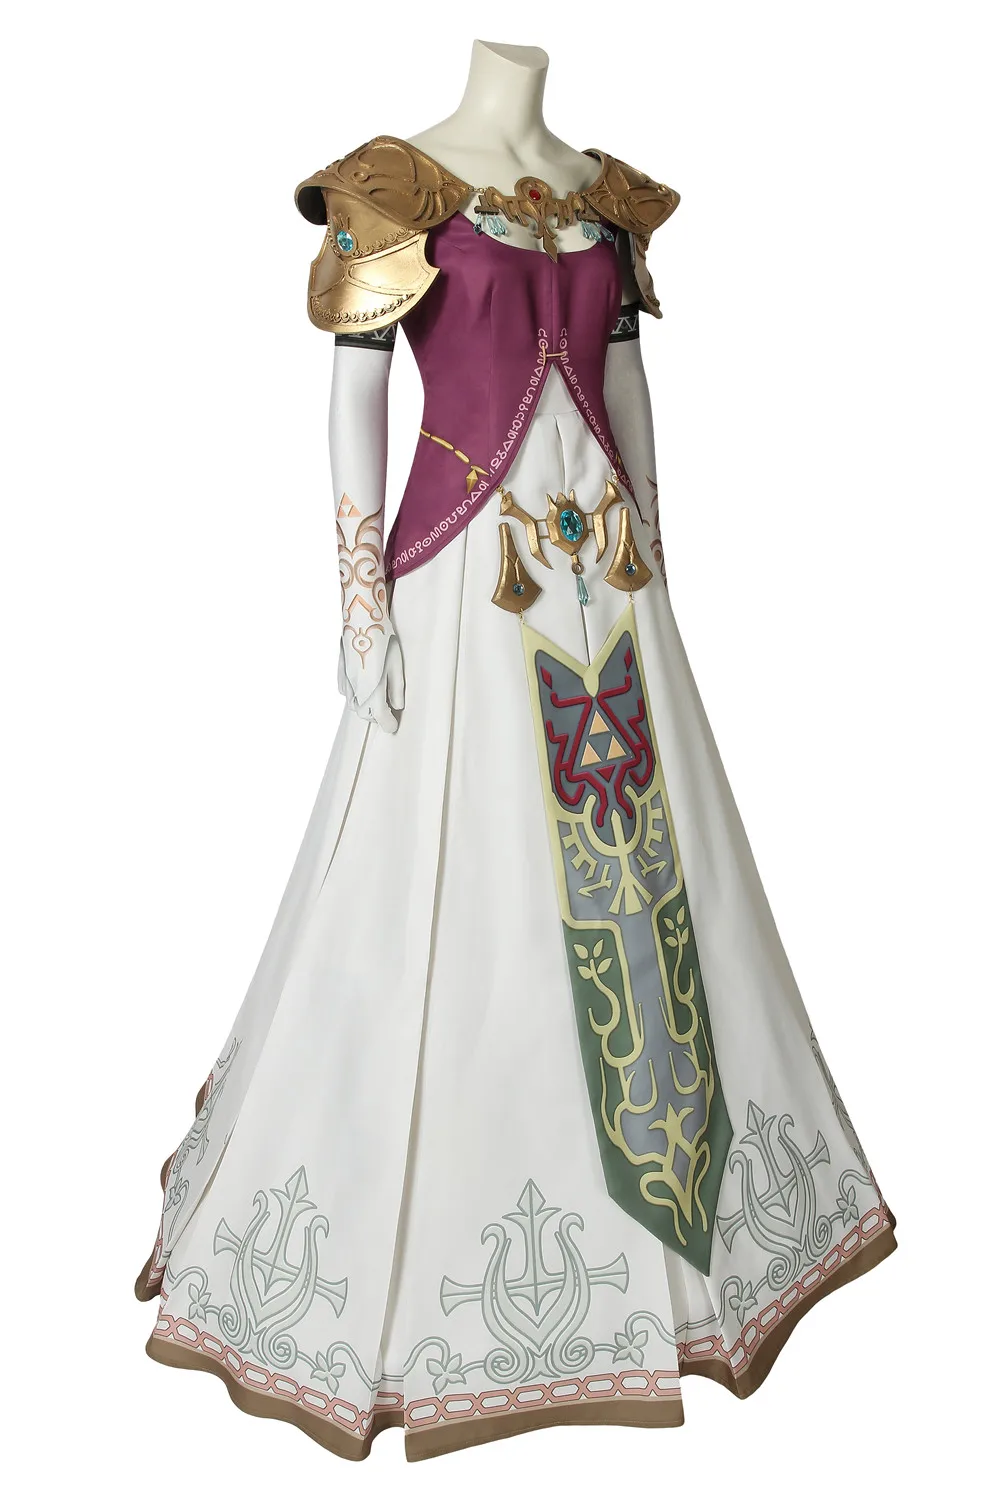 Новая легенда о Зельде: Сумеречная принцесса косплей костюм Принцесса Зельда аксессуары Хэллоуин одежда Bbeautiful платье